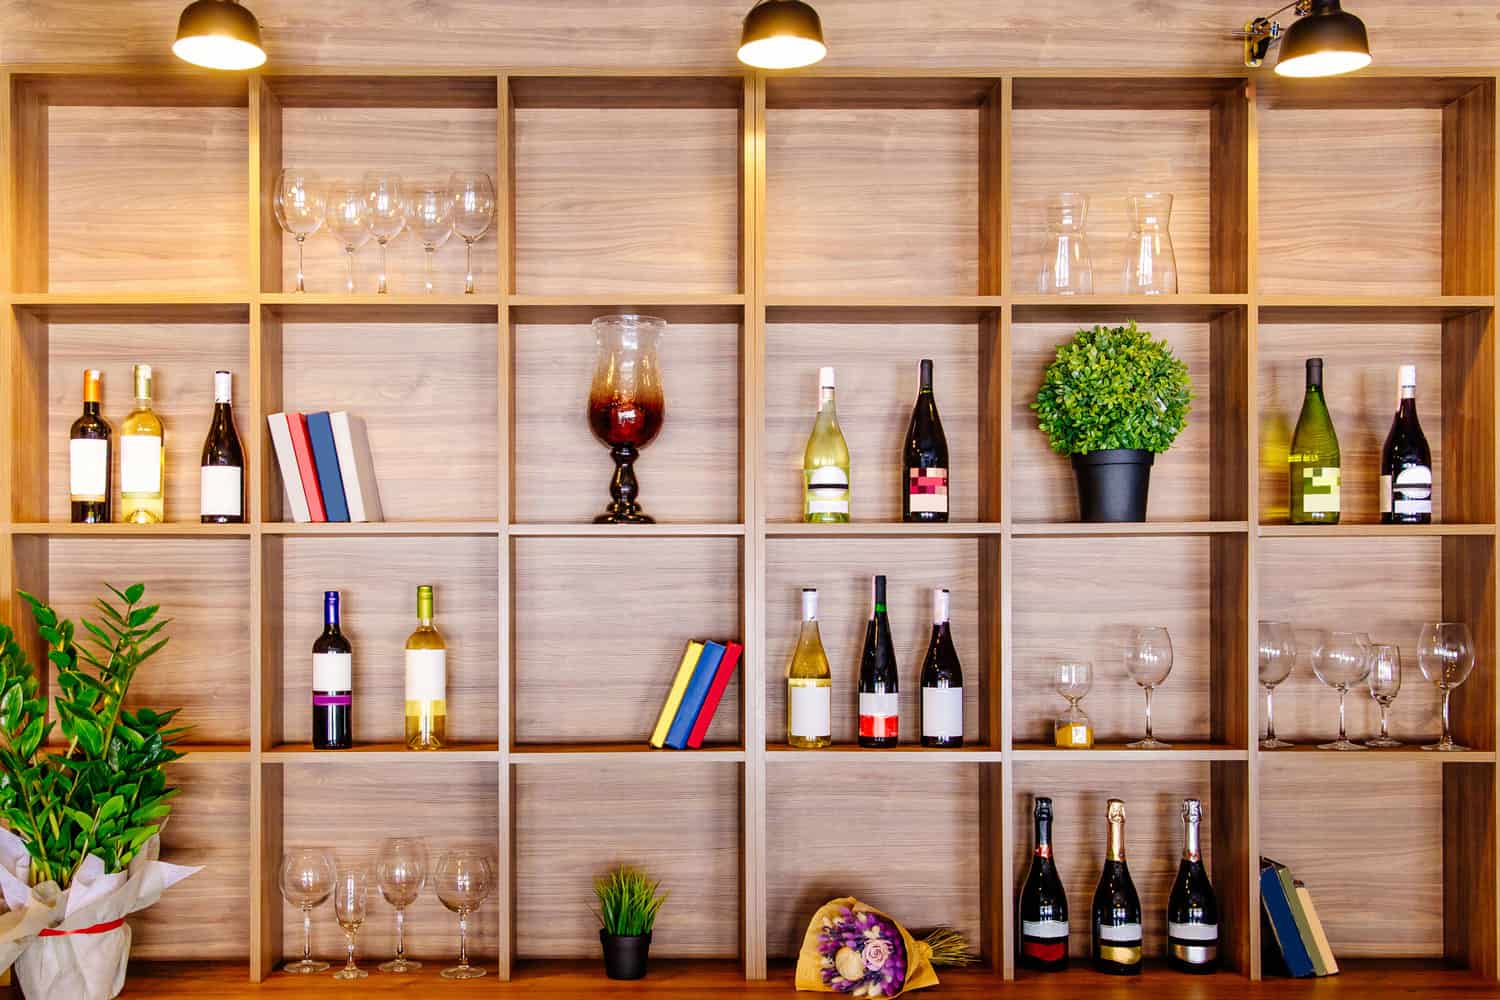 在私人酒庄的橱柜房间里，白葡萄酒和红葡萄酒的木架上放着书